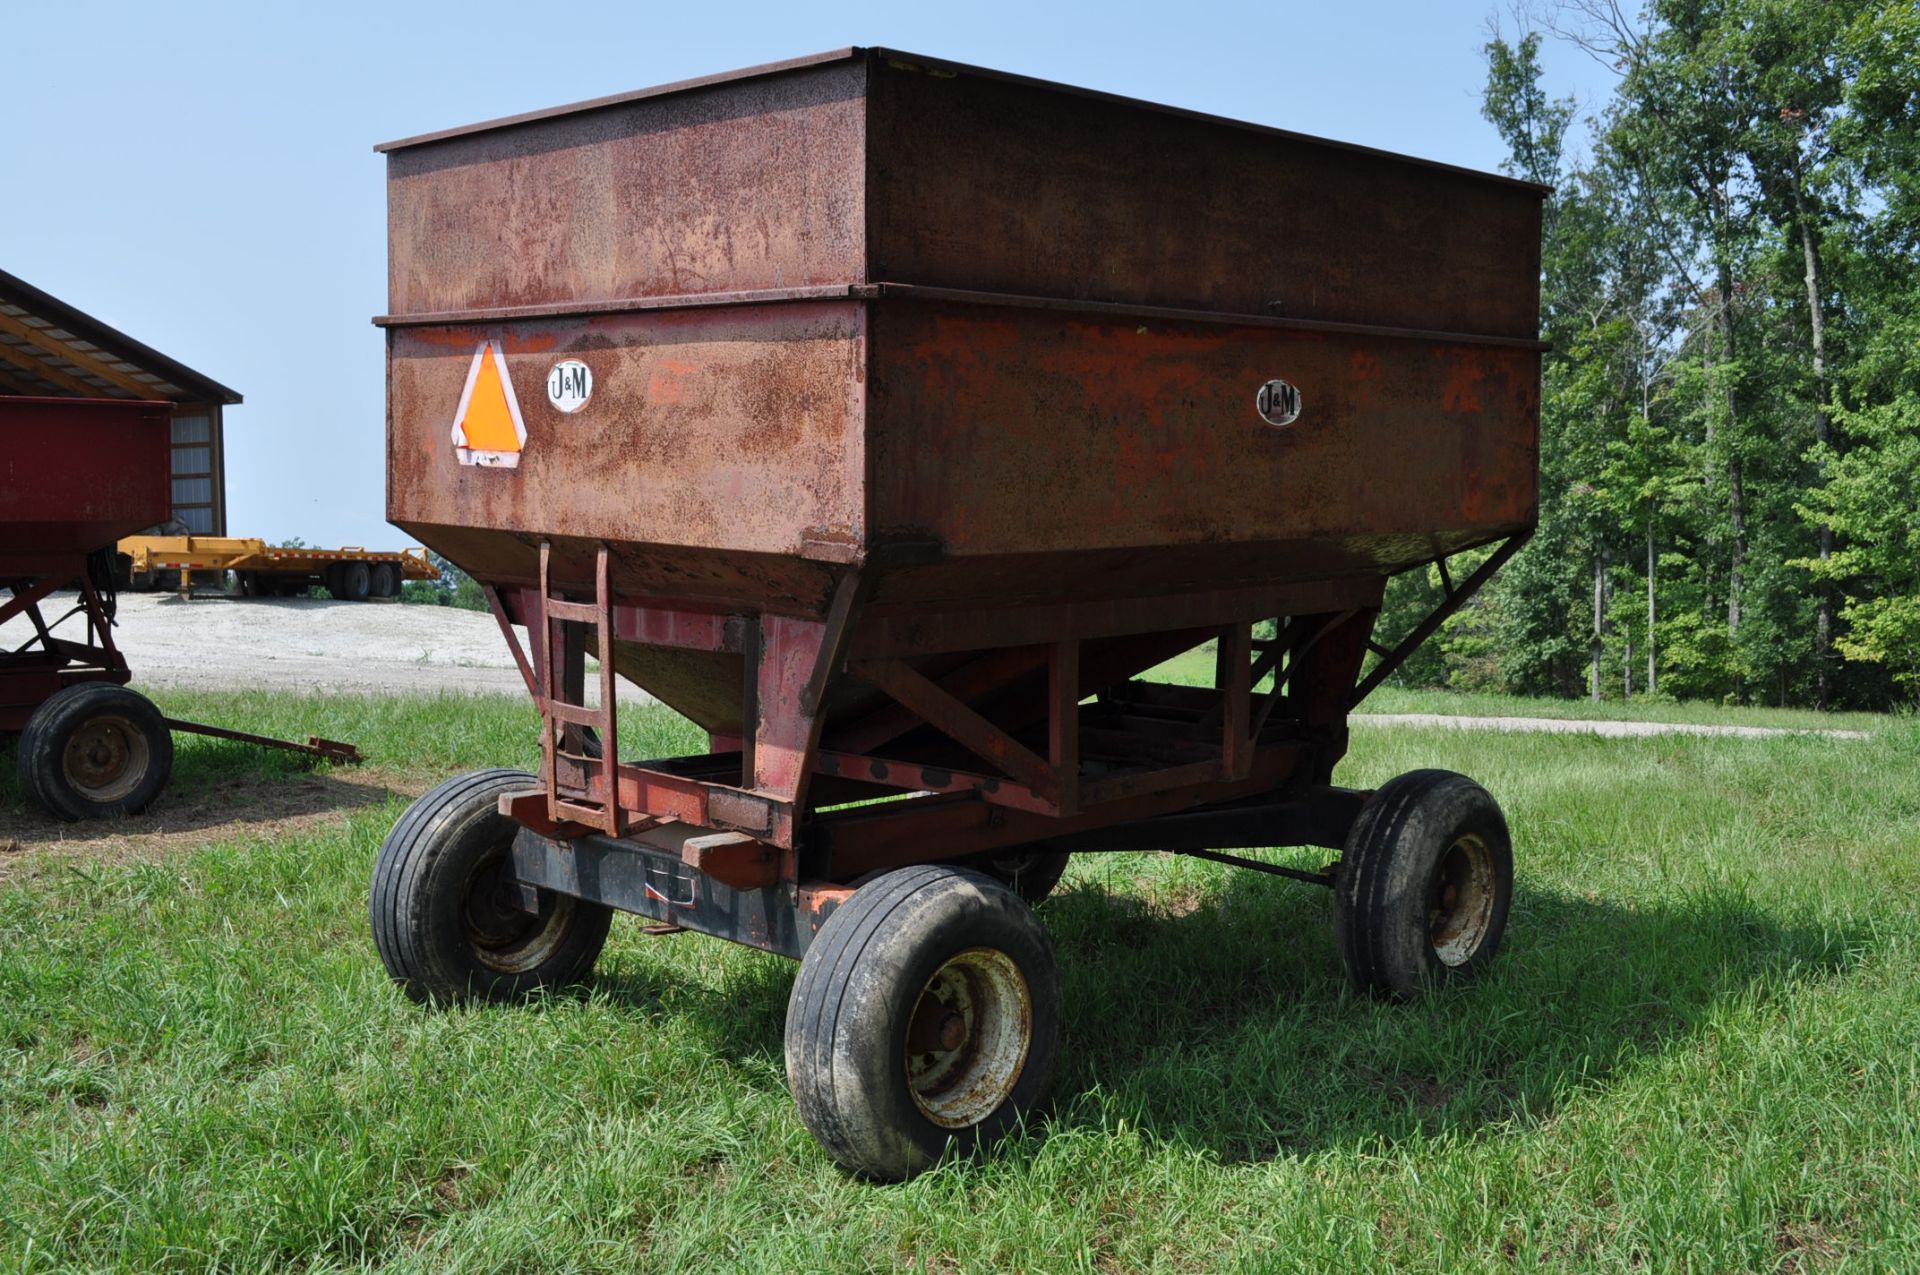 250 bu gravity wagon, Ed Johnson - Jackson, Ohio (740) 988-0813 - Image 3 of 11